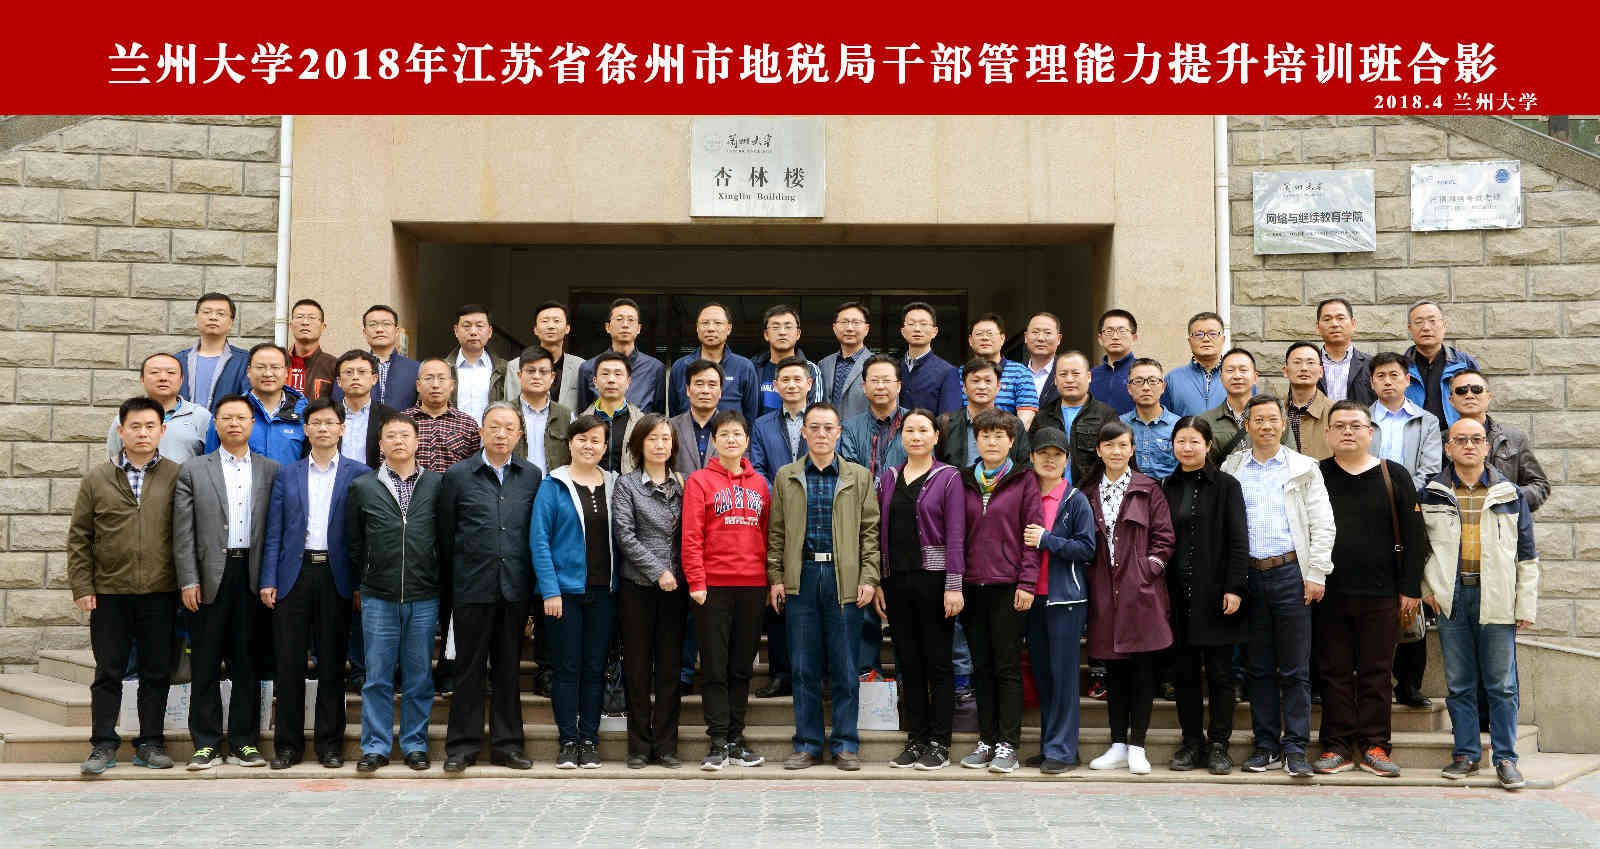 兰州大学2018年徐州市地税局干部管理能力提升培训班成功举办